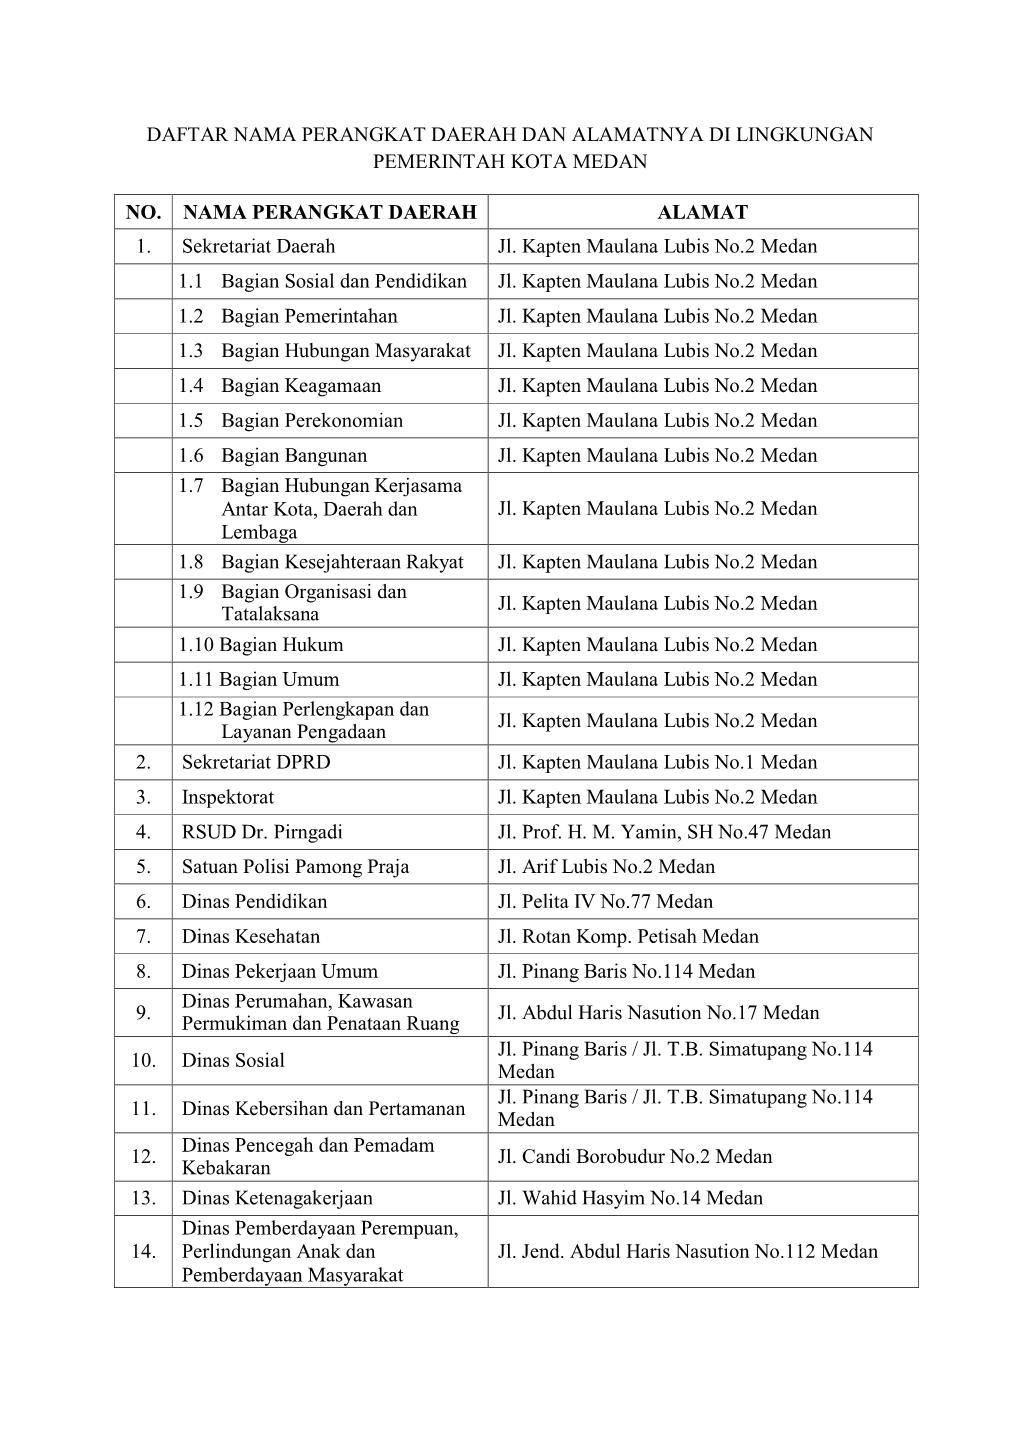 Daftar Nama Perangkat Daerah Dan Alamatnya Di Lingkungan Pemerintah Kota Medan